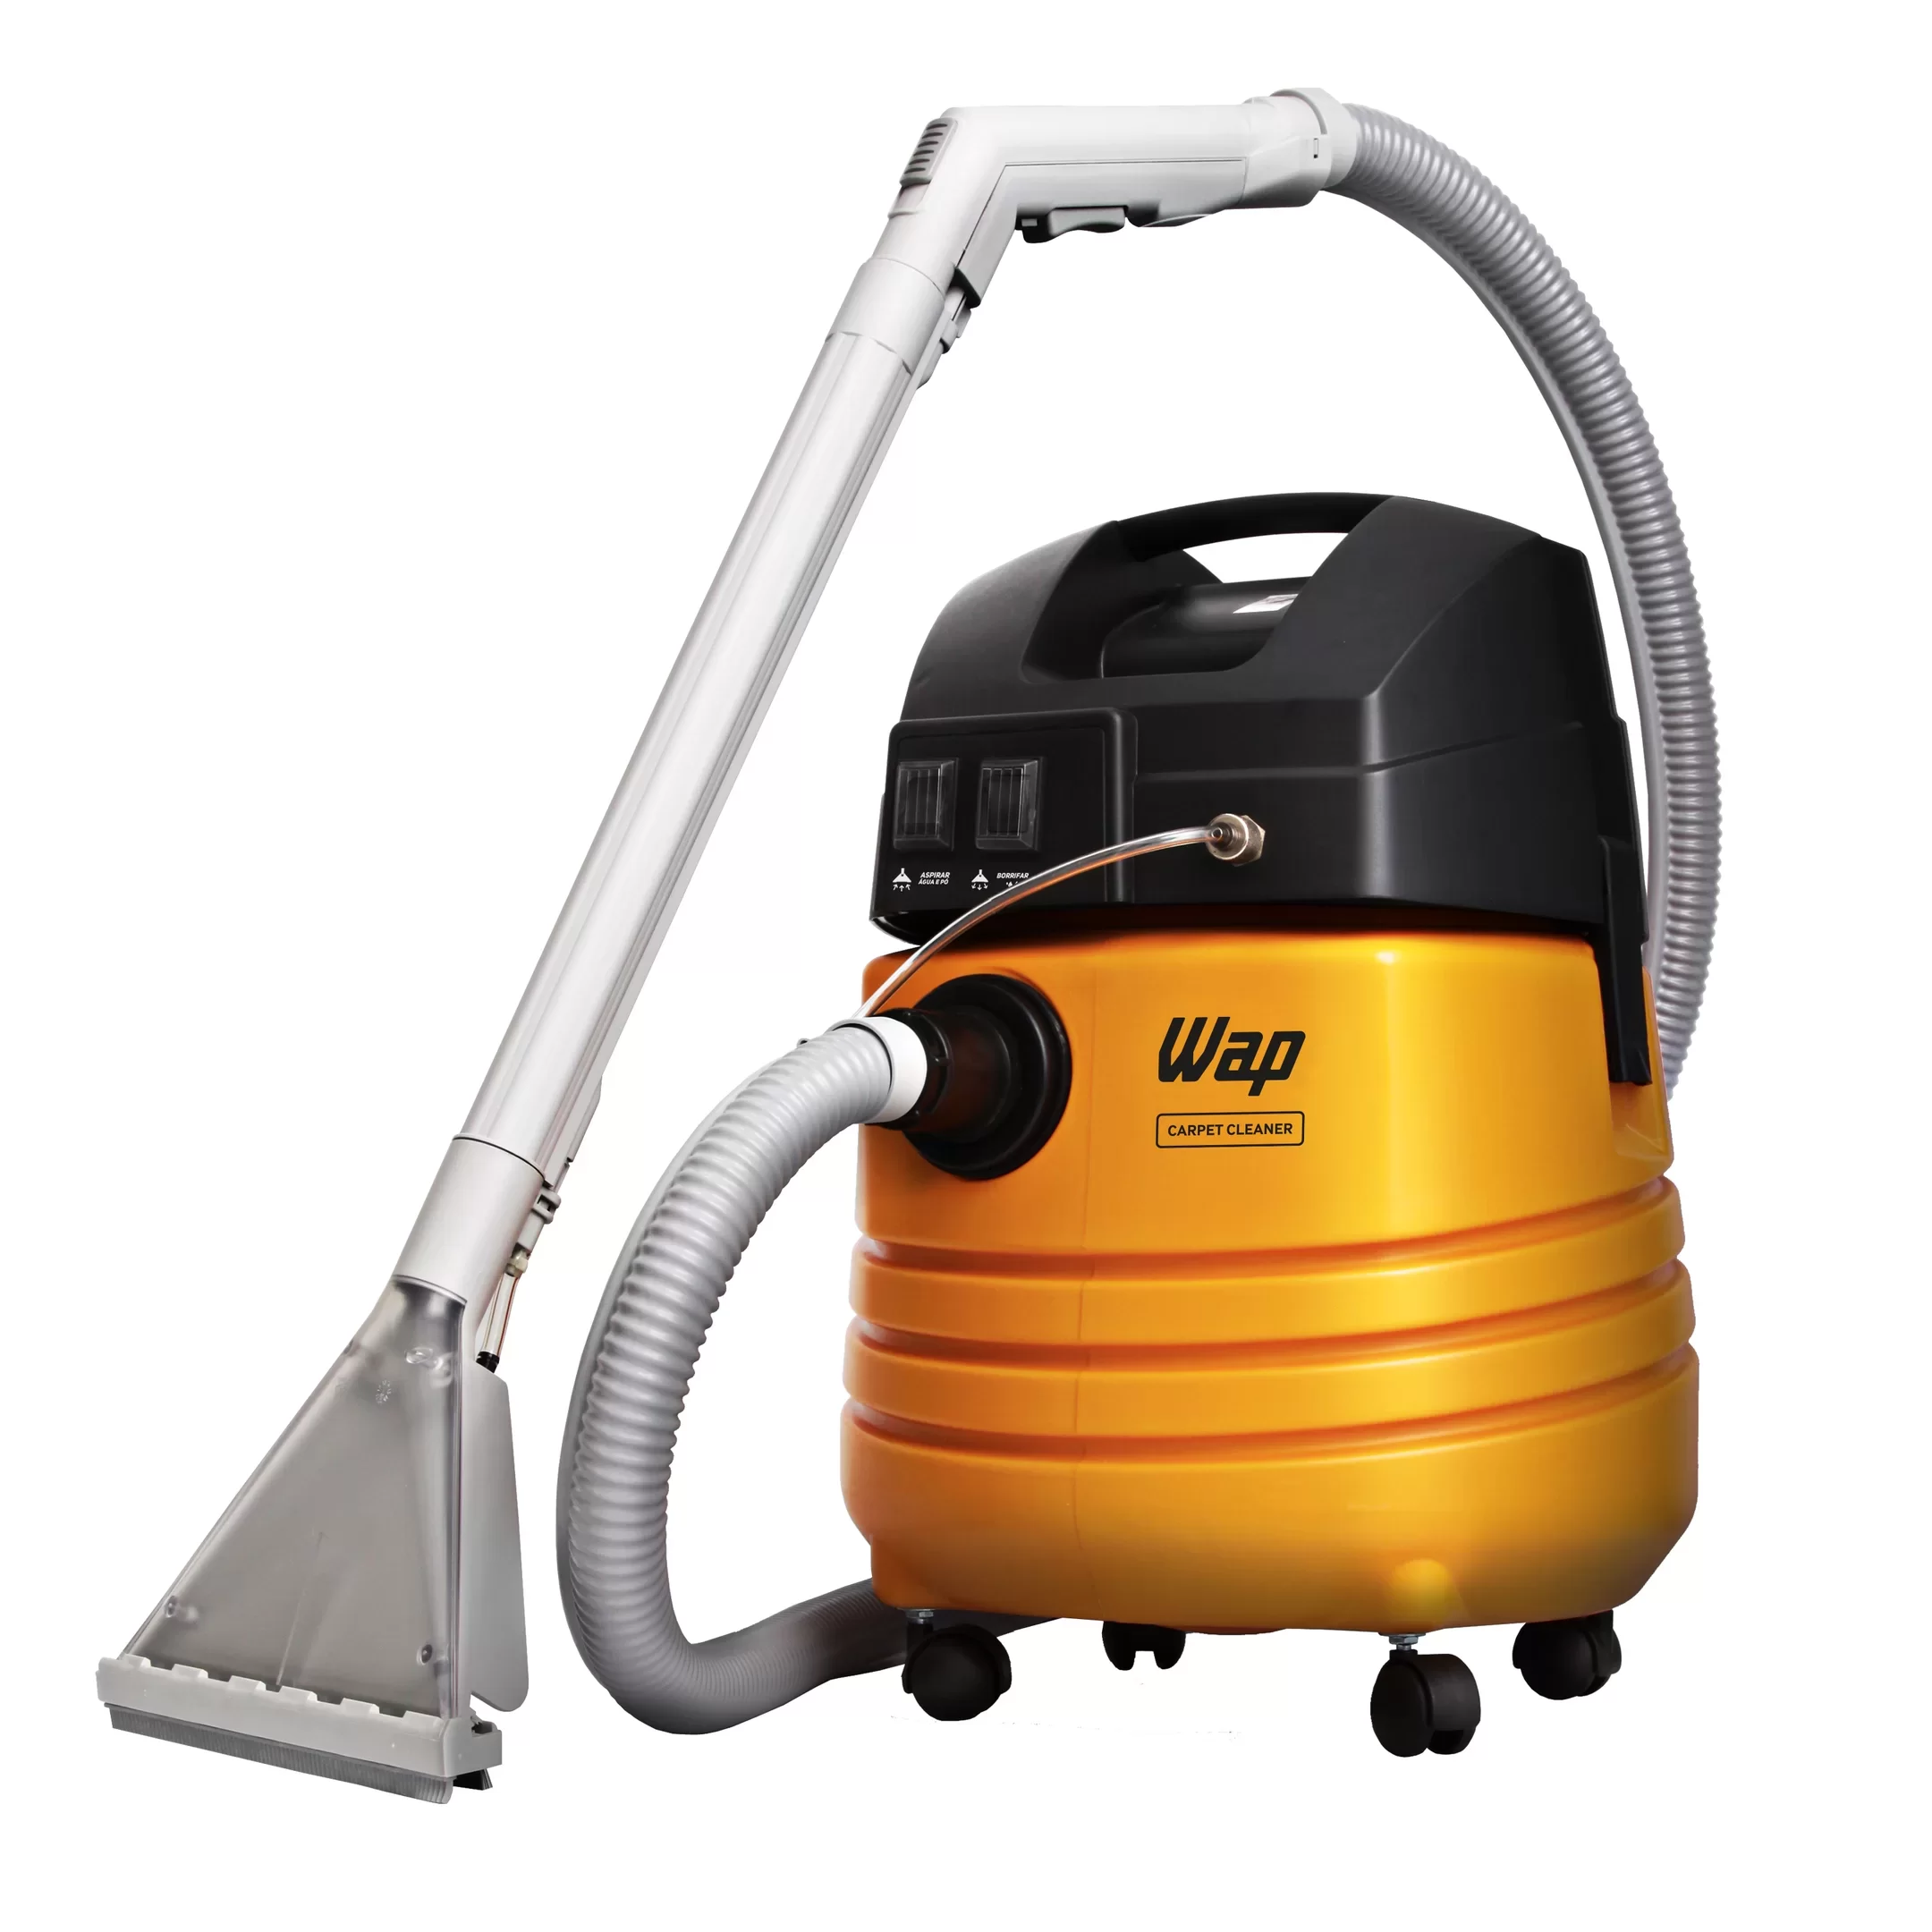 Extratora de Limpeza WAP Carpet Cleaner 1600W Uso Profissional Bocal de Sopro, Borrifa e Aspira 220V Amarelo/Preto - 2